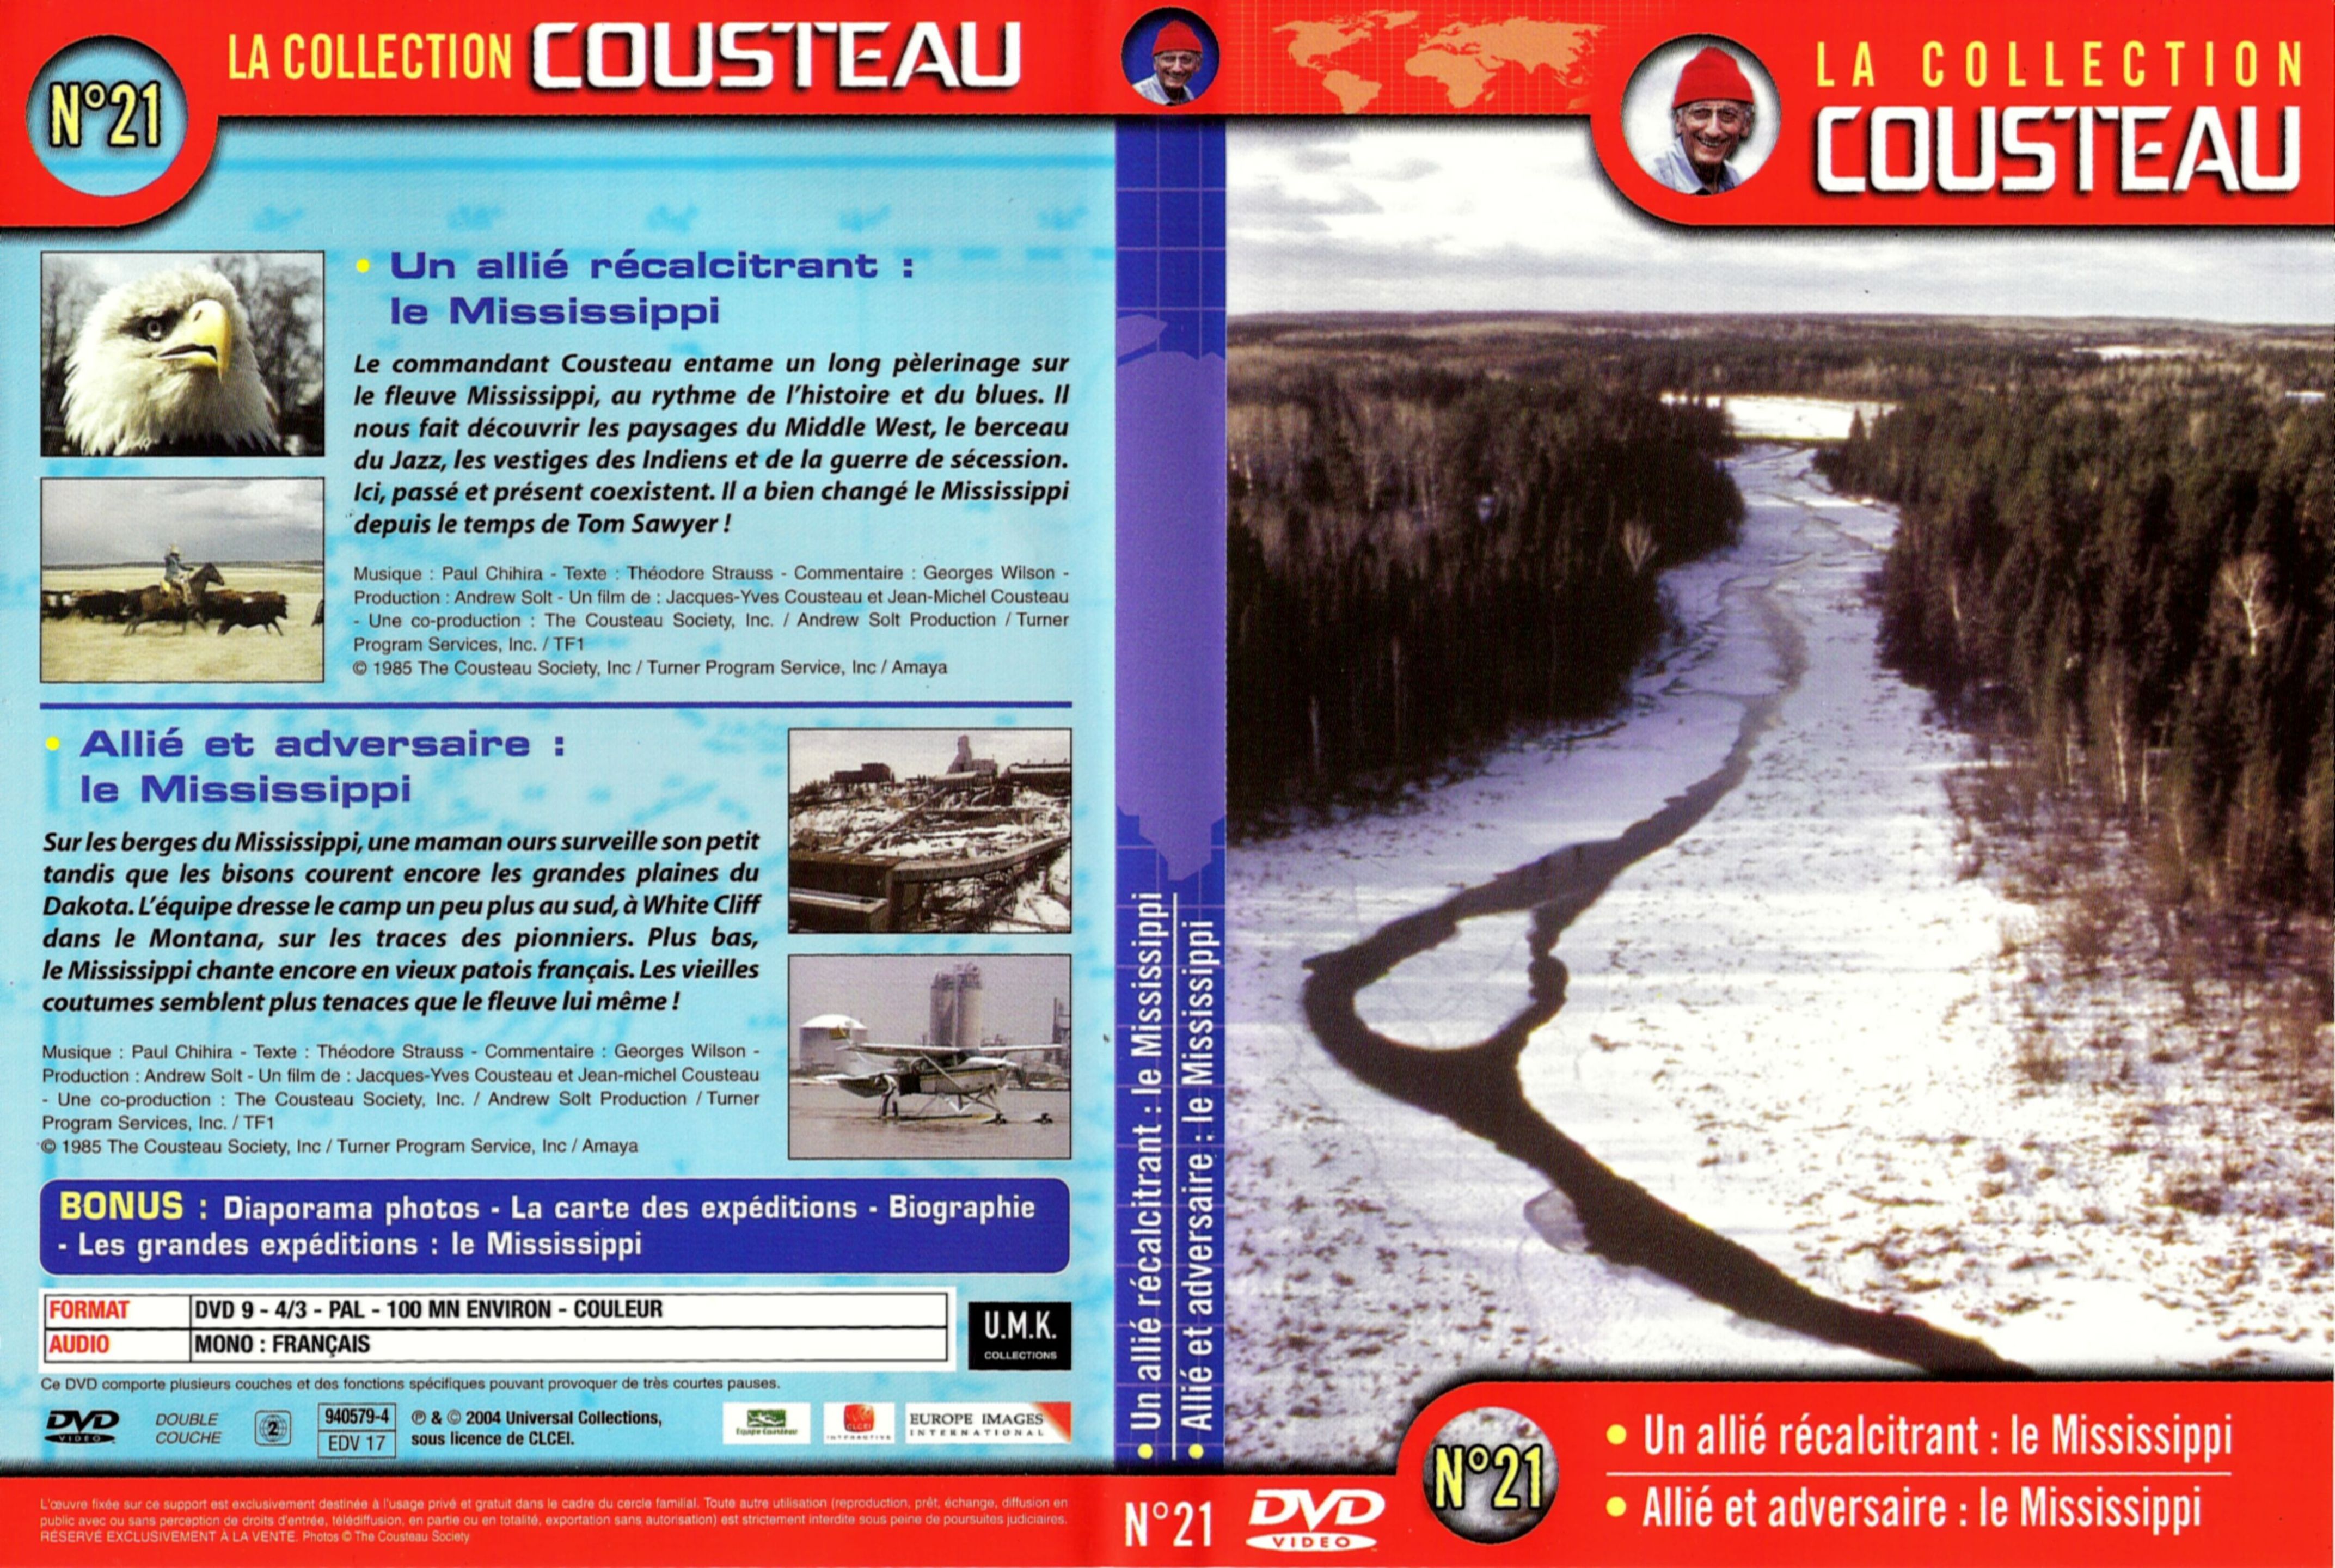 Jaquette DVD Cousteau Collection vol 21